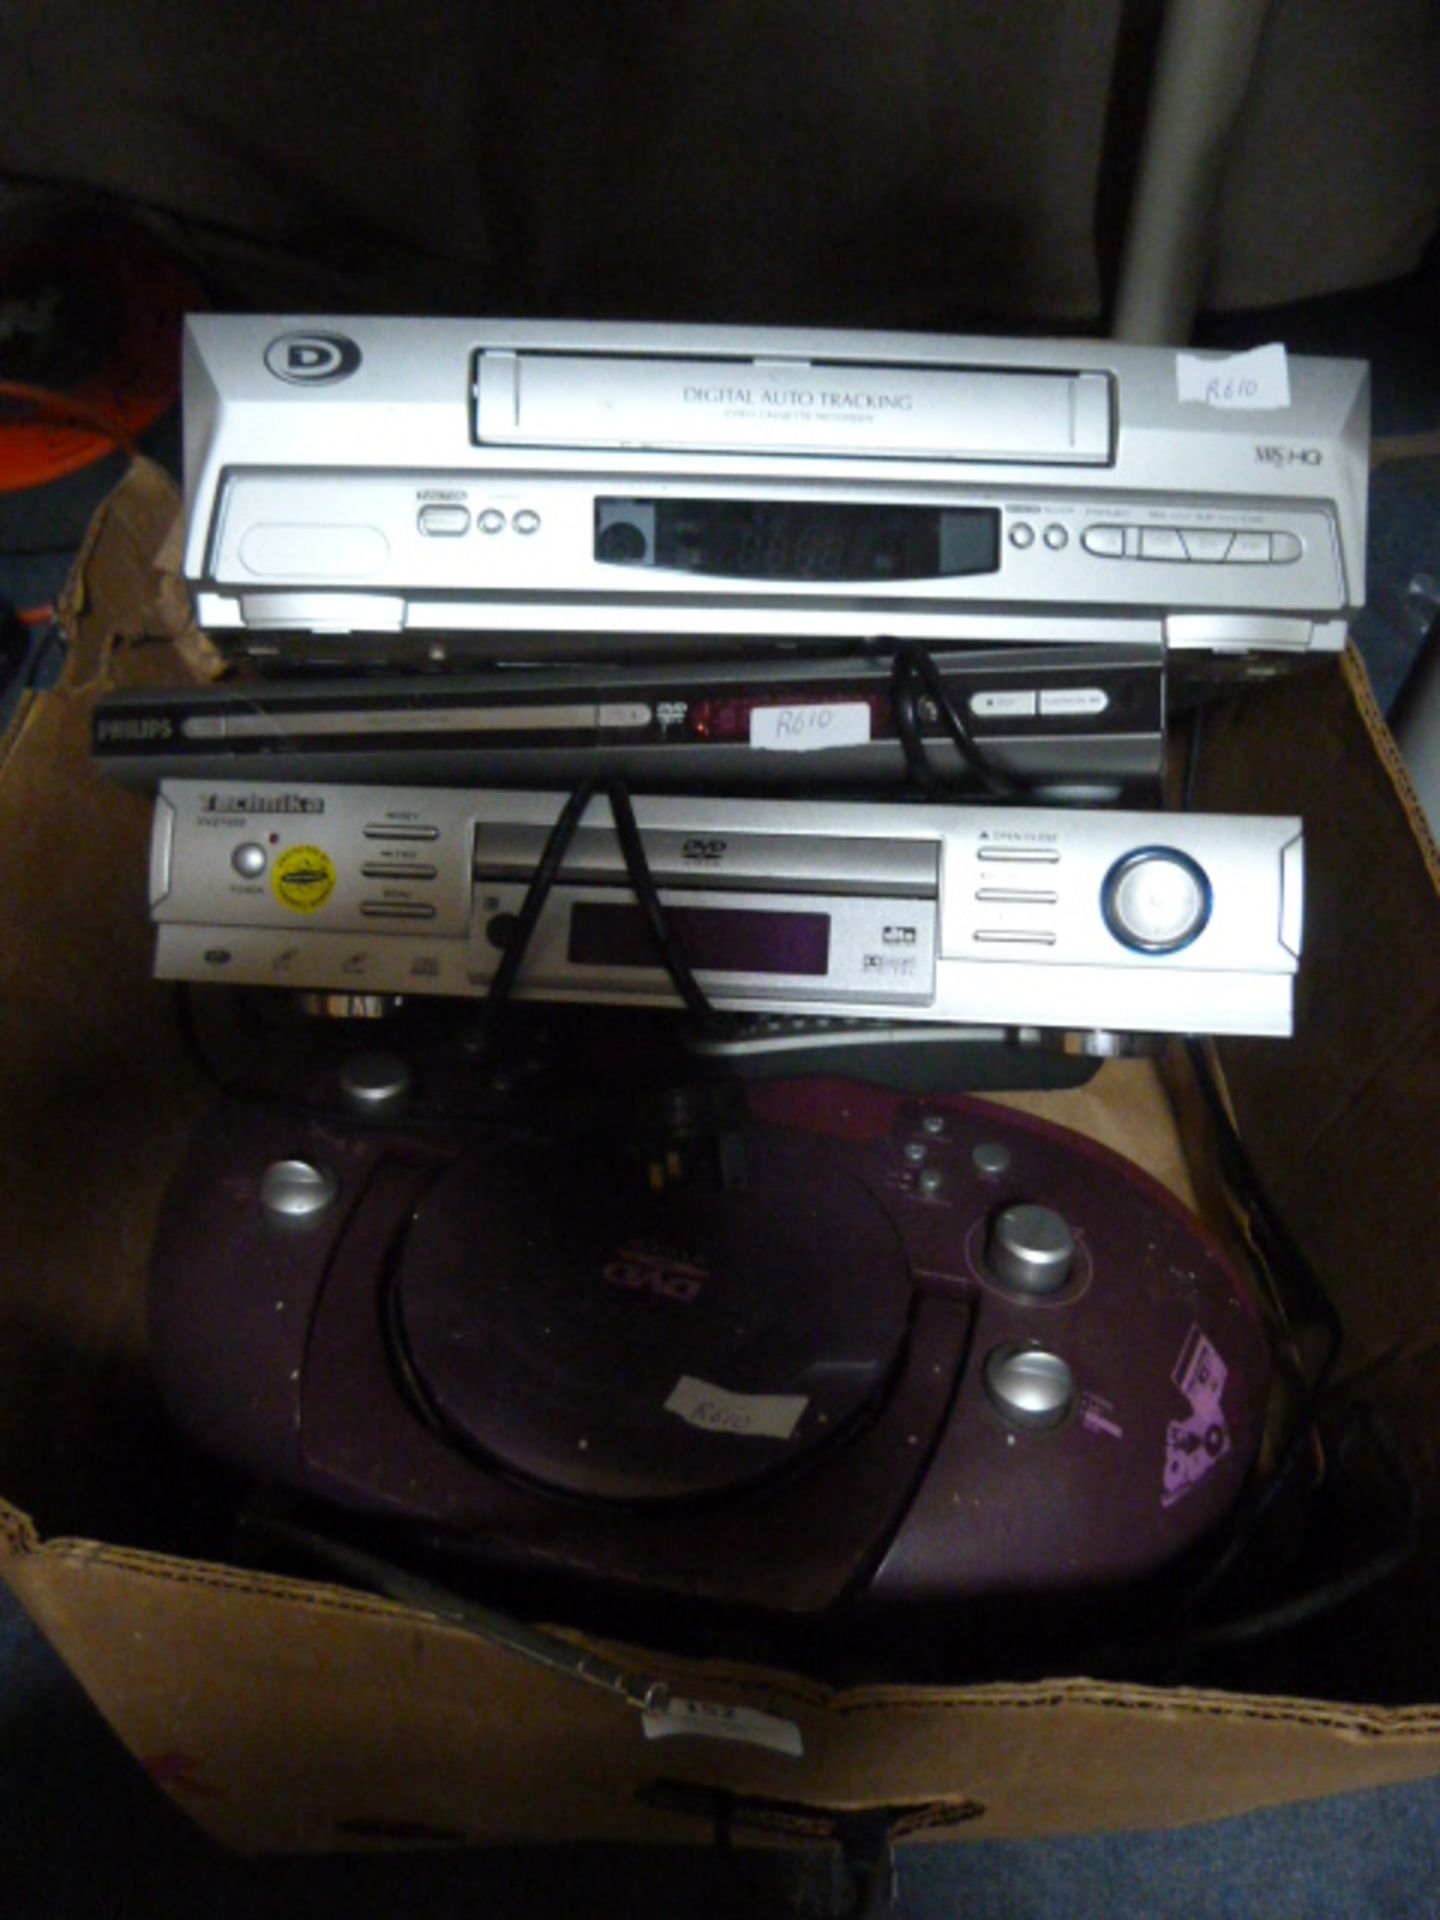 Technika DVD, VHS Player, etc.